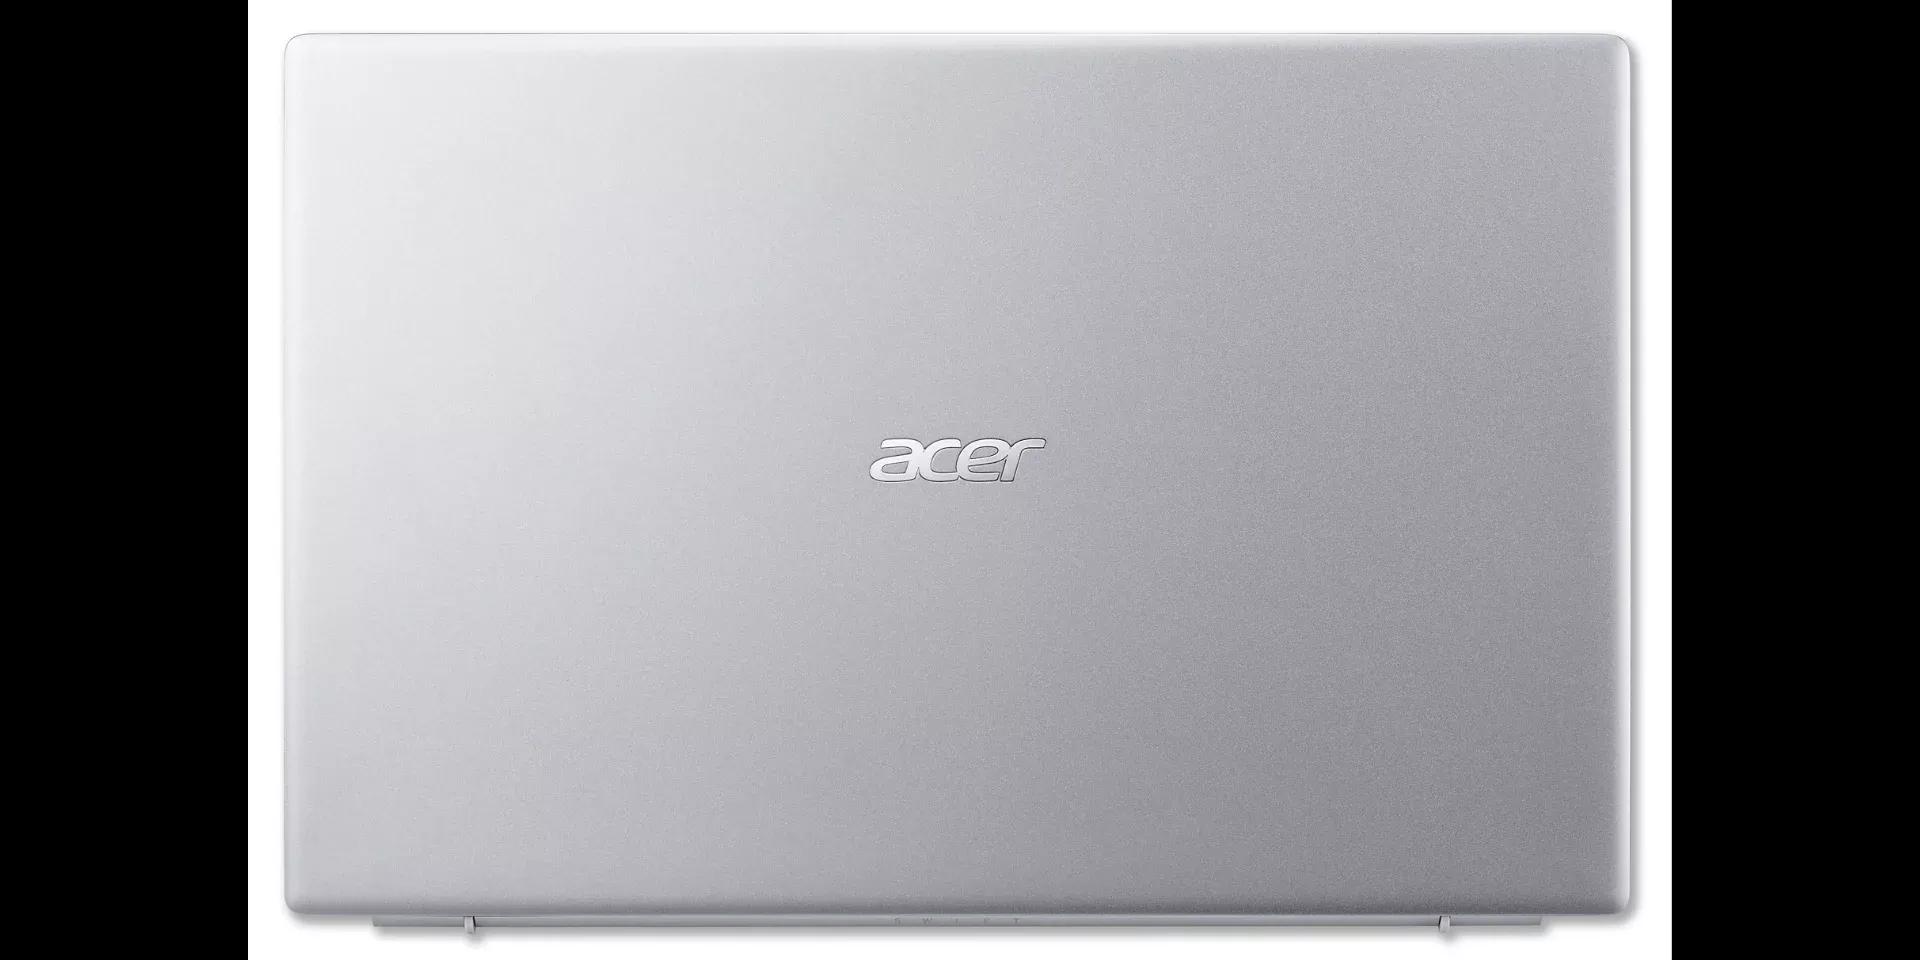 Acer Swift 3 2021 Ryzen 7 5700U / AMD Vega 8 / 8GB RAM / 512GB SSD / 14" FHD Display